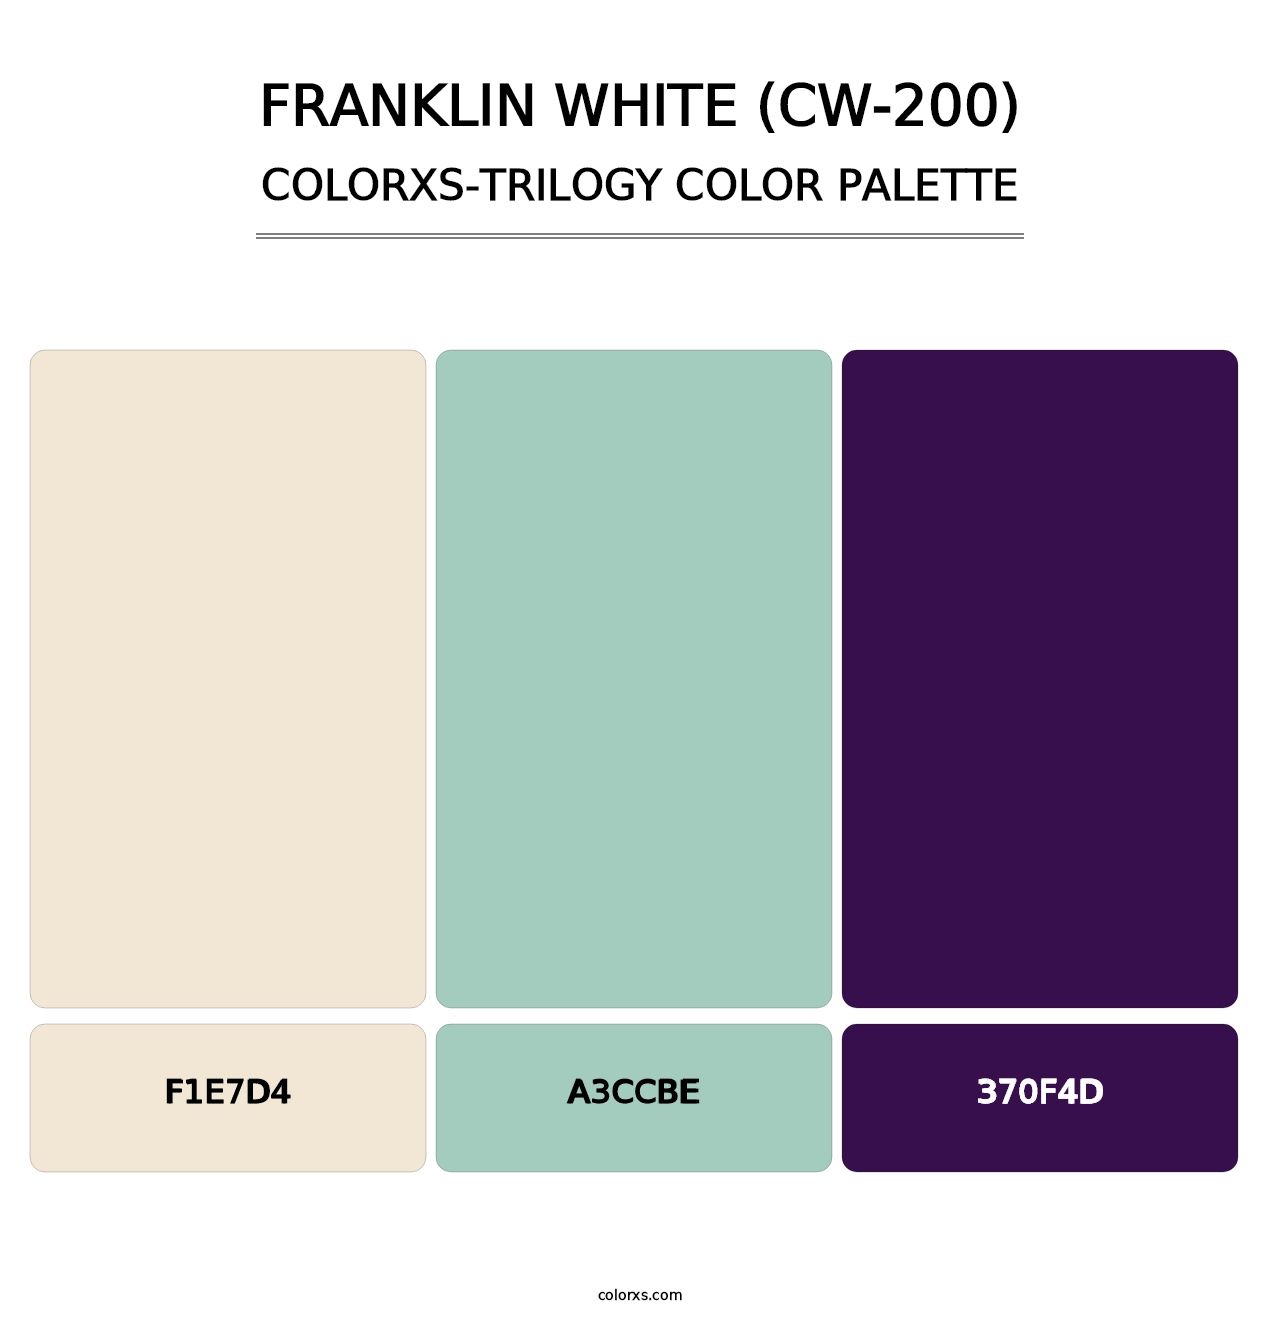 Franklin White (CW-200) - Colorxs Trilogy Palette